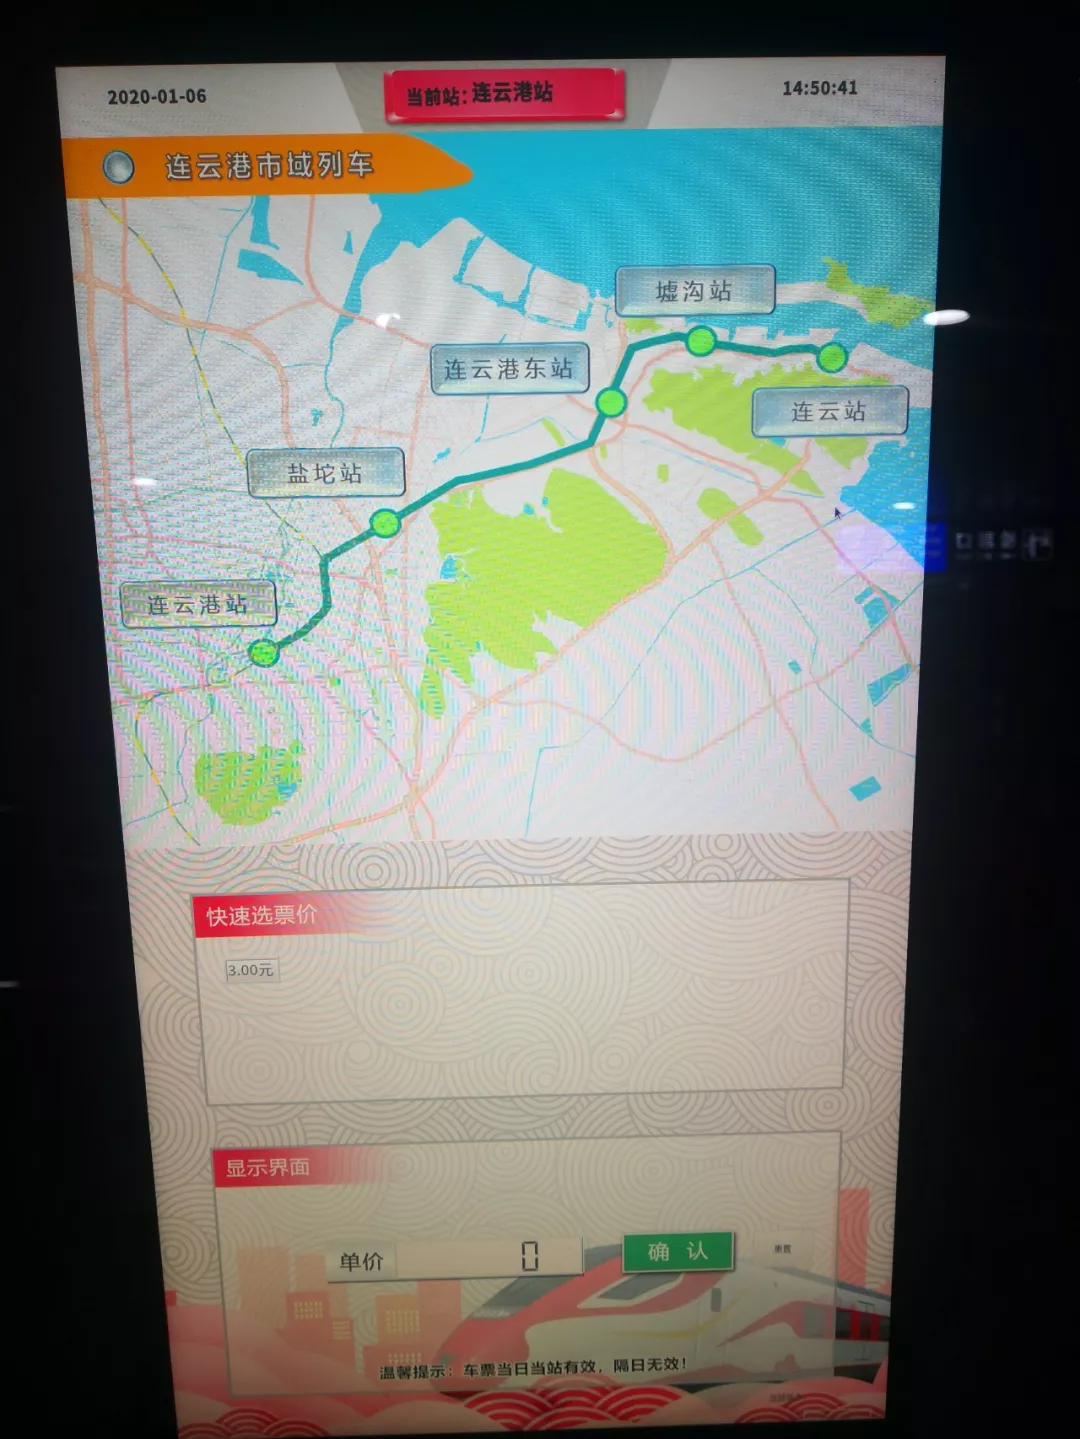 连云港城市动车免费运营期间乘坐方式有变化！